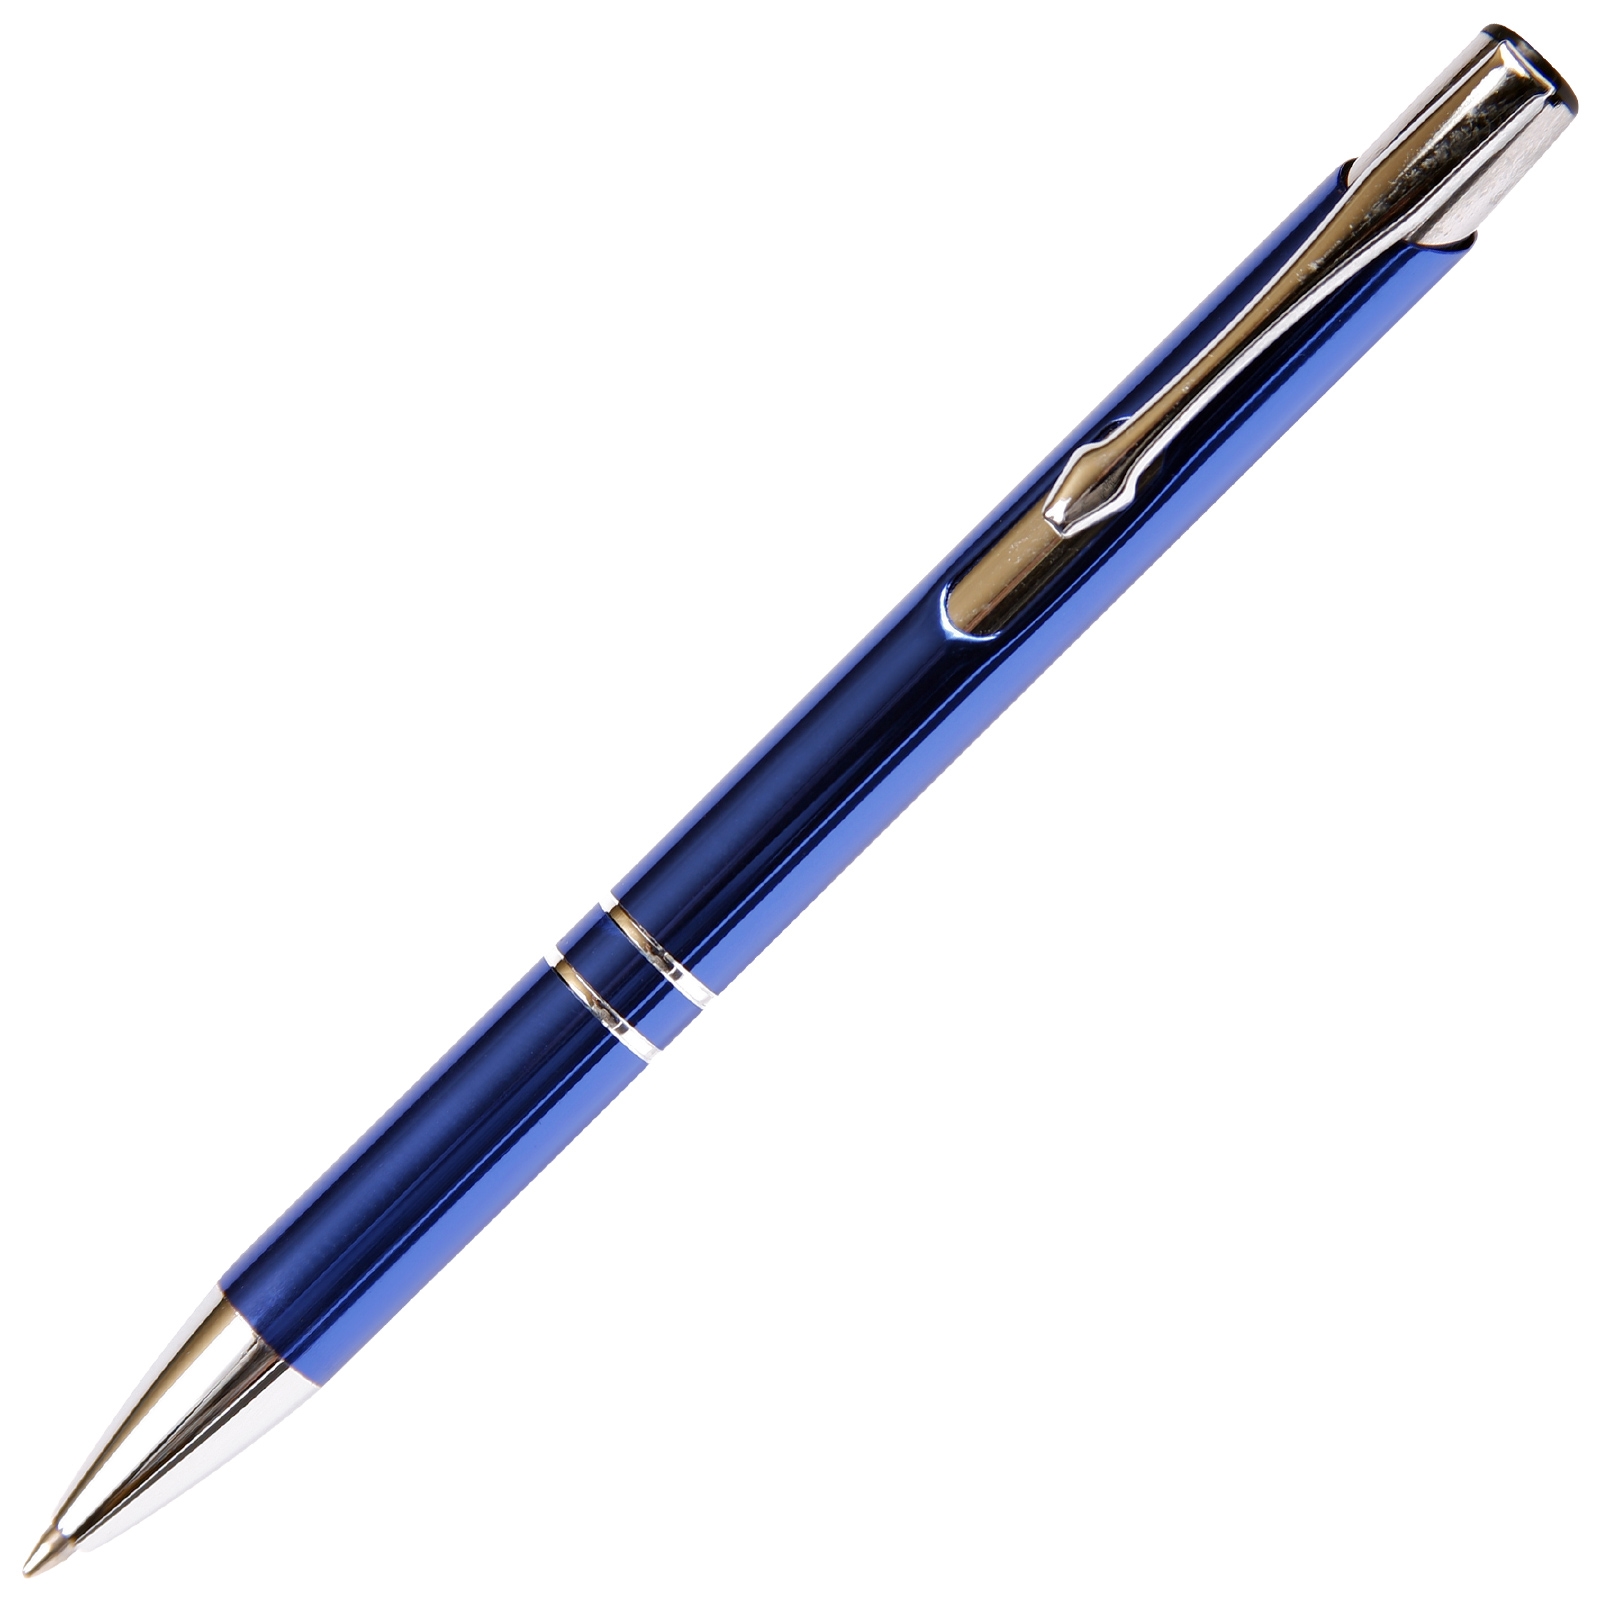 Budget Friendly JJ Ballpoint Pen - Blue By Lanier Pens